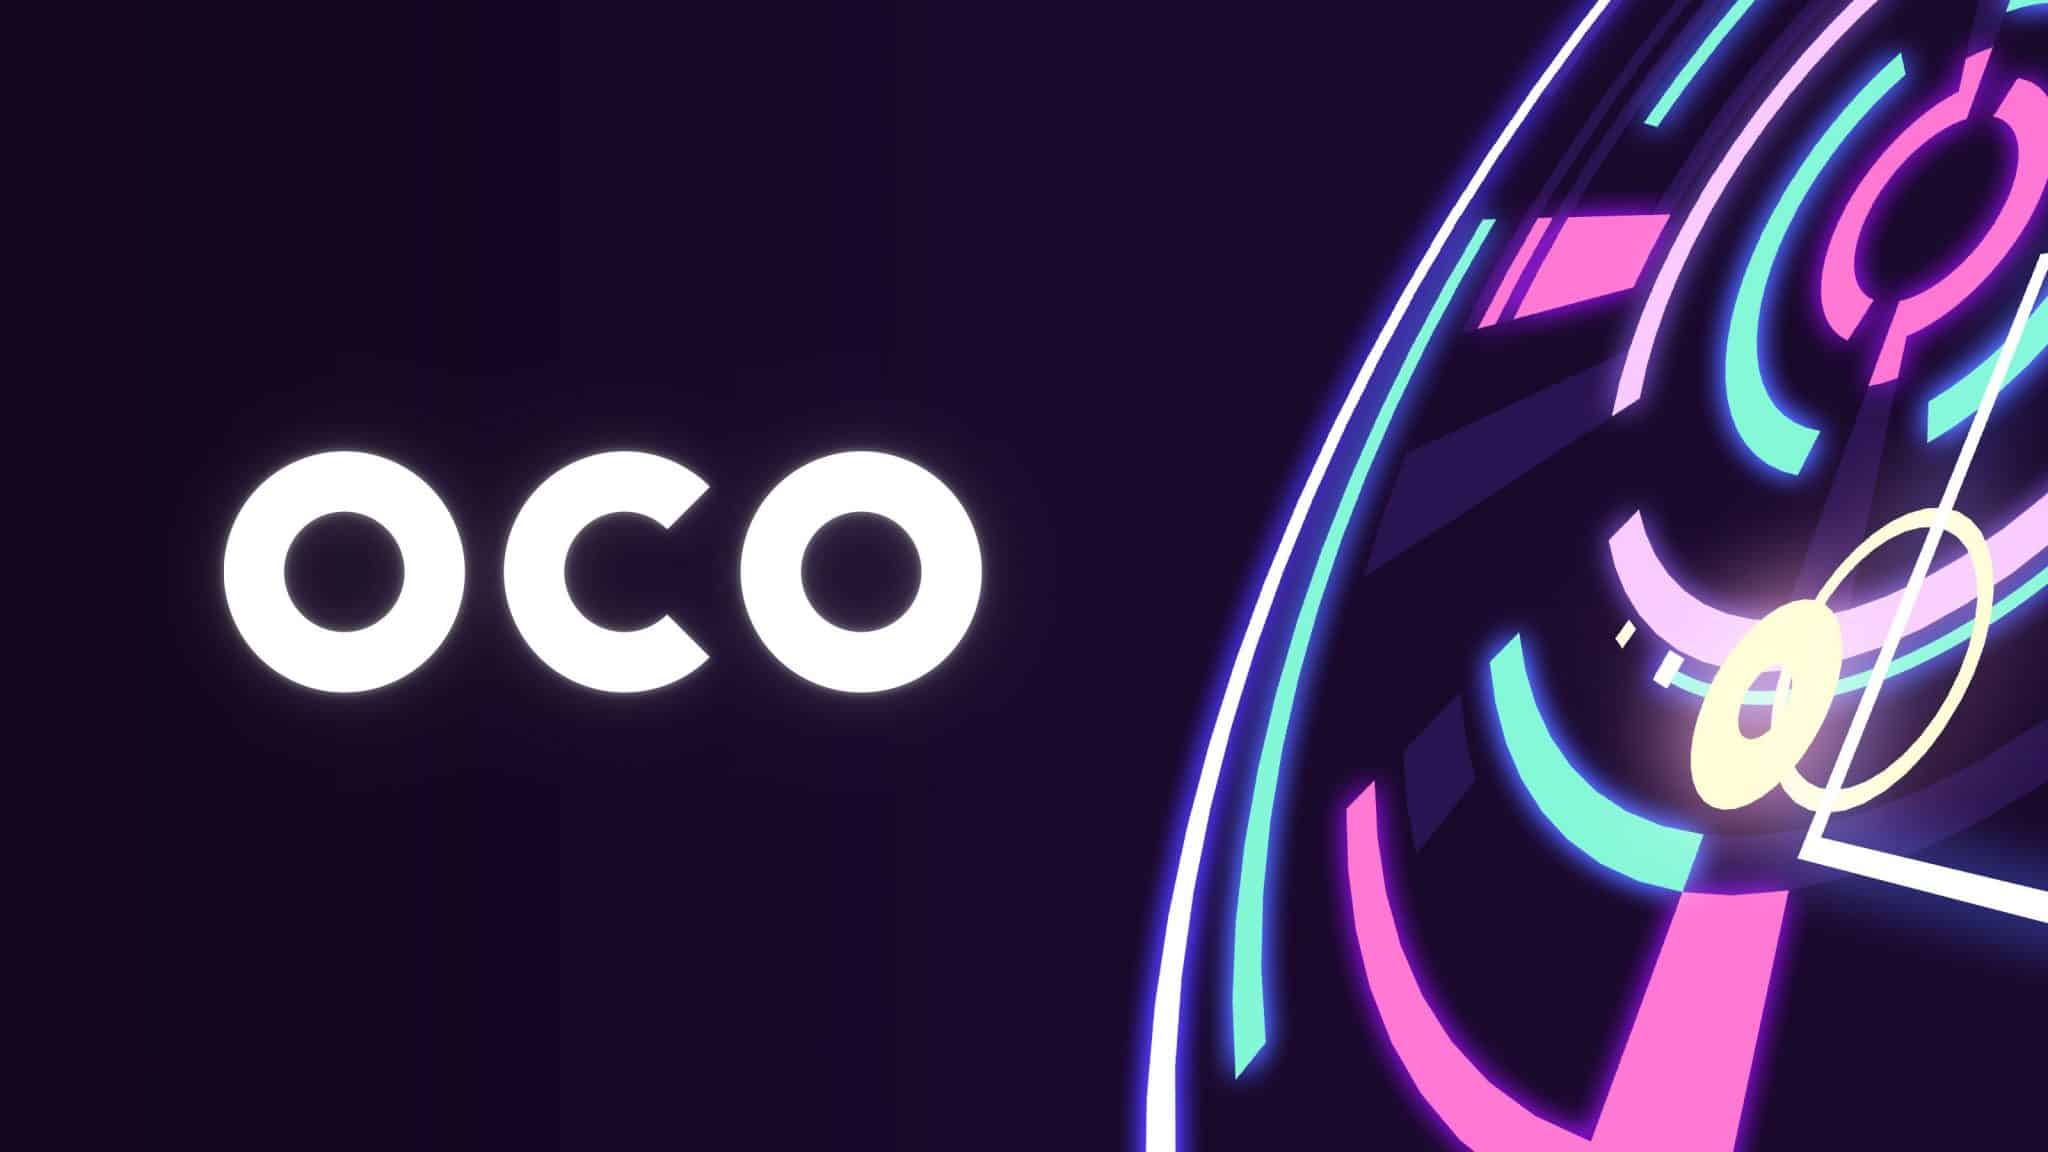 OCO artwork